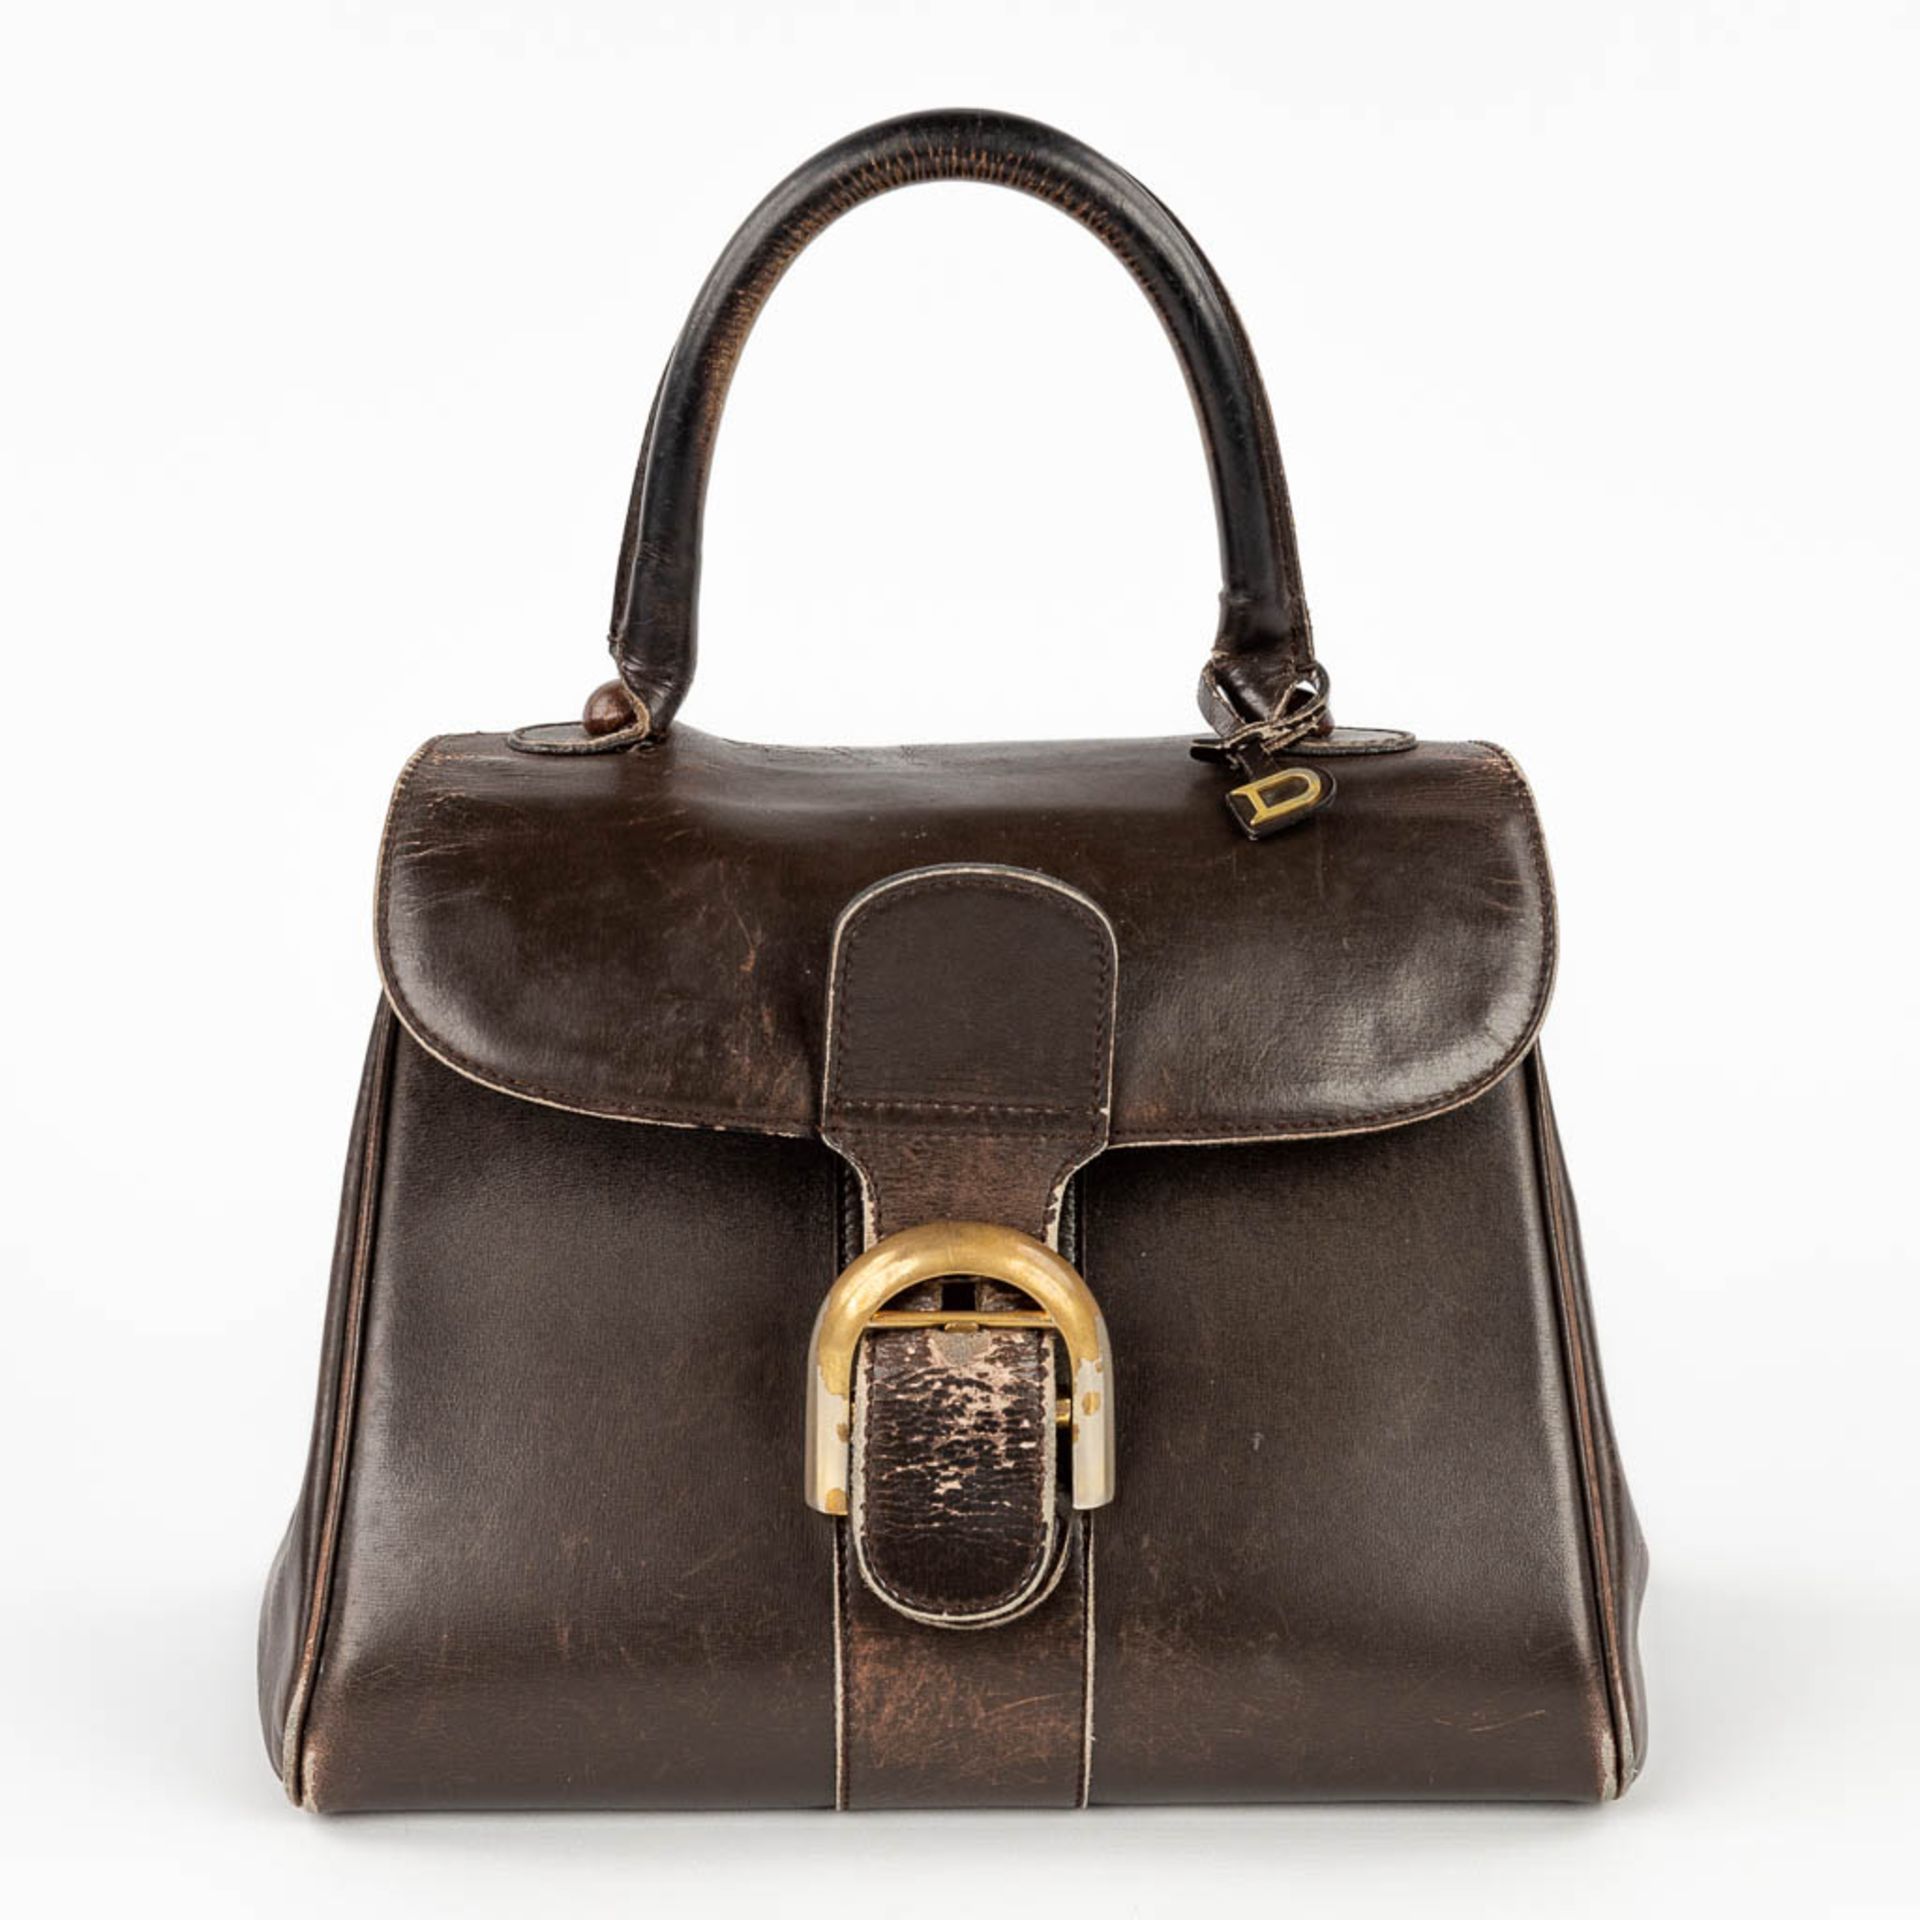 Delvaux Brillant PM, a handbag made of dark brown leather. Circa 1950. (W: 26 x H: 30 cm)